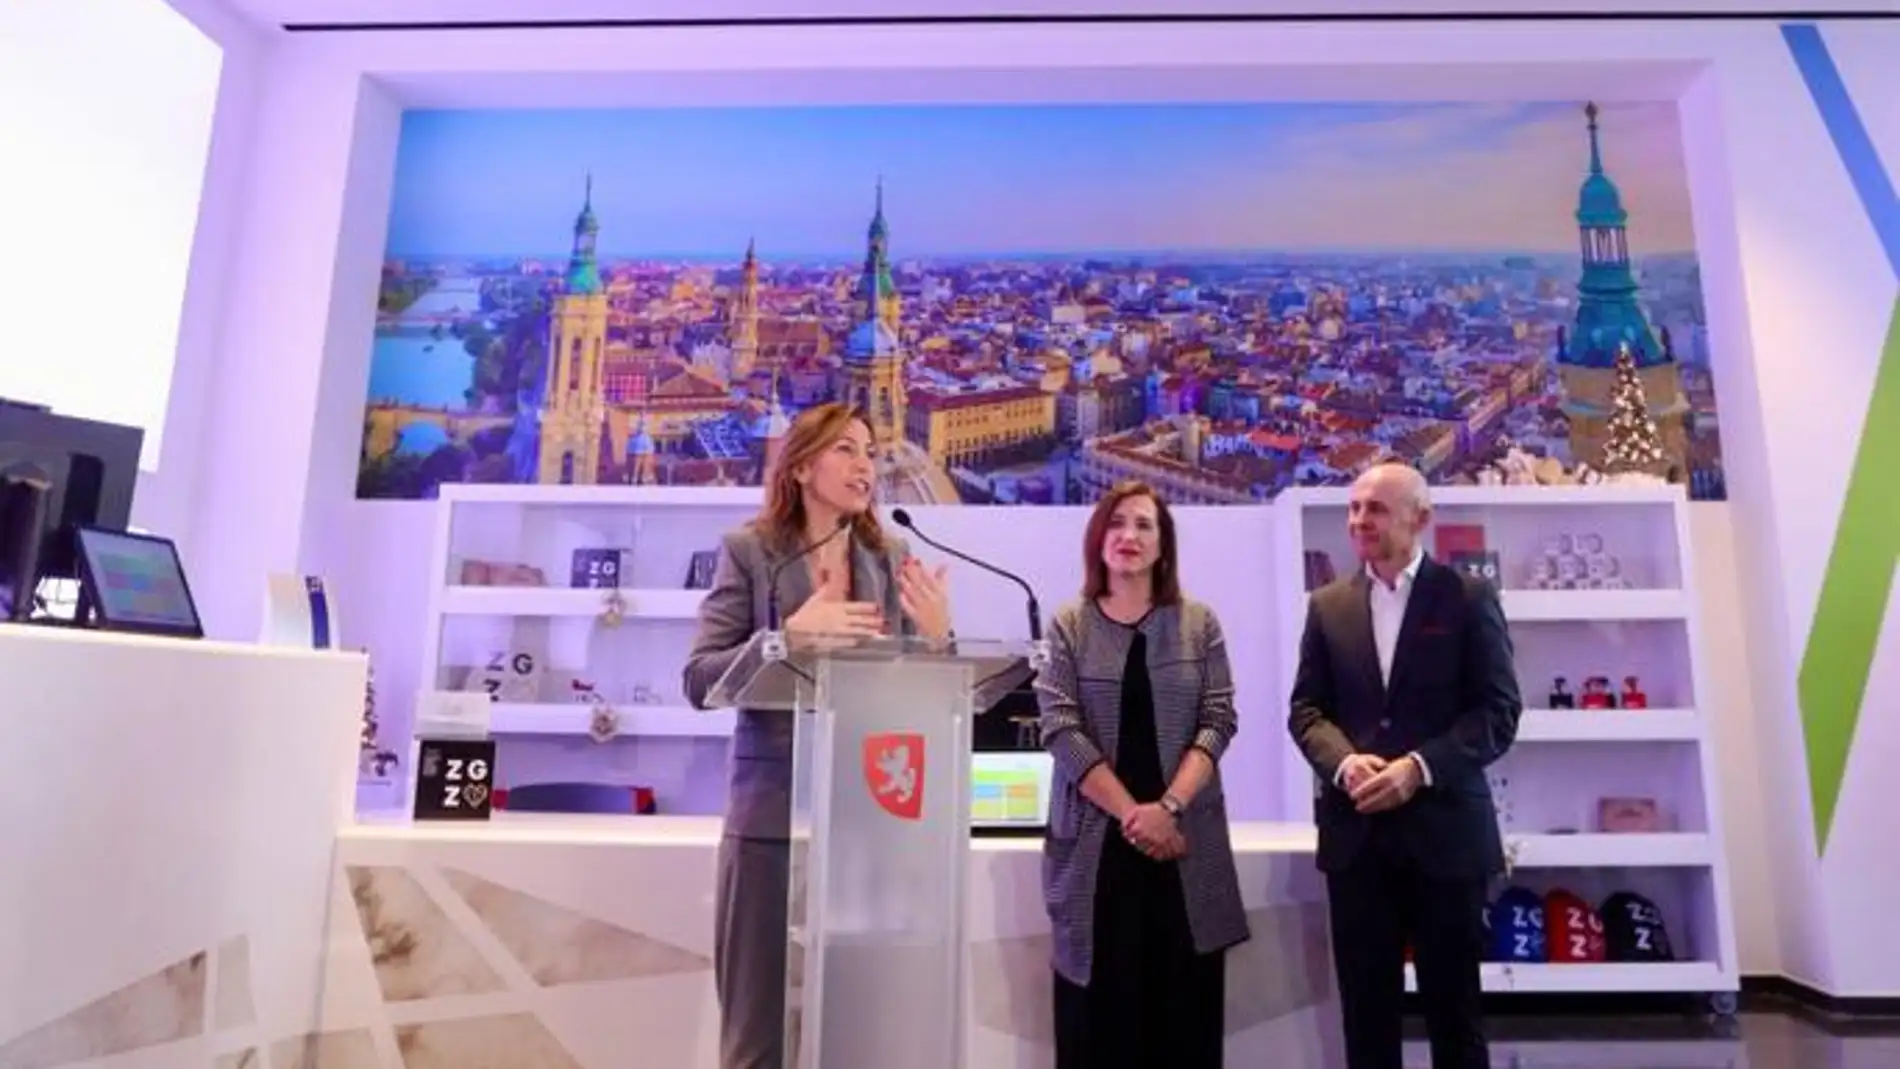 Zaragoza inaugura un nuevo centro de visitantes, más moderno y accesible